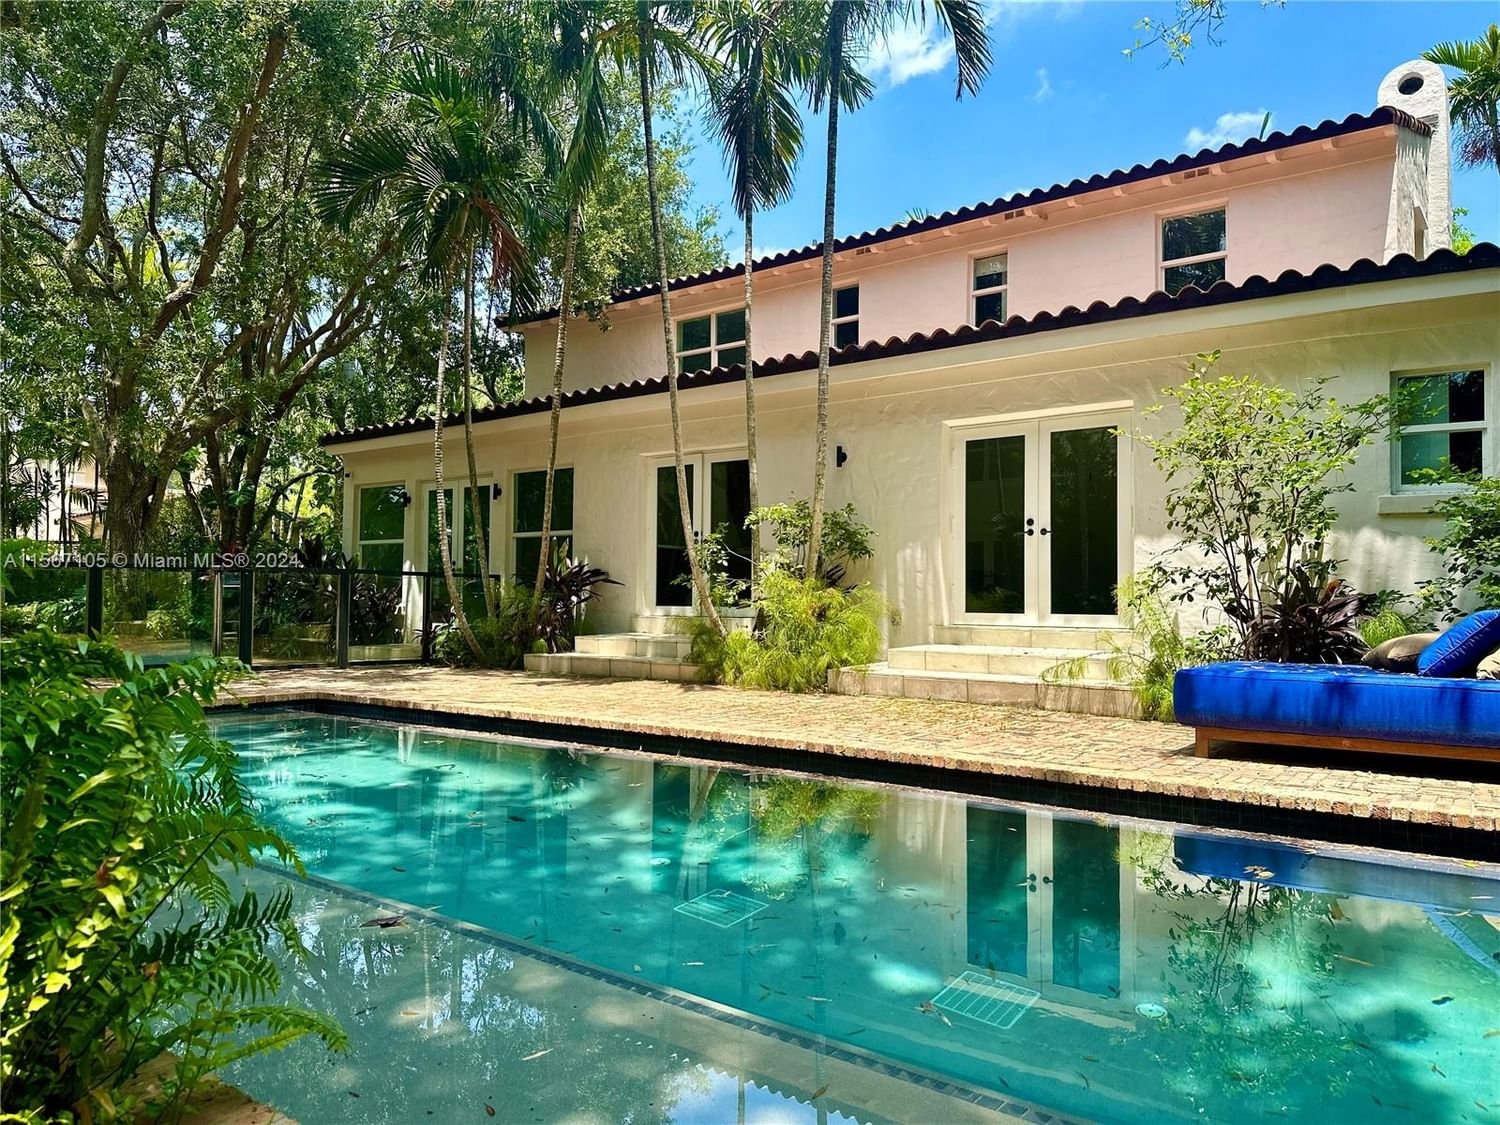 Real estate property located at 5812 Alton Rd, Miami-Dade County, LA GORCE GOLF SUB, Miami Beach, FL